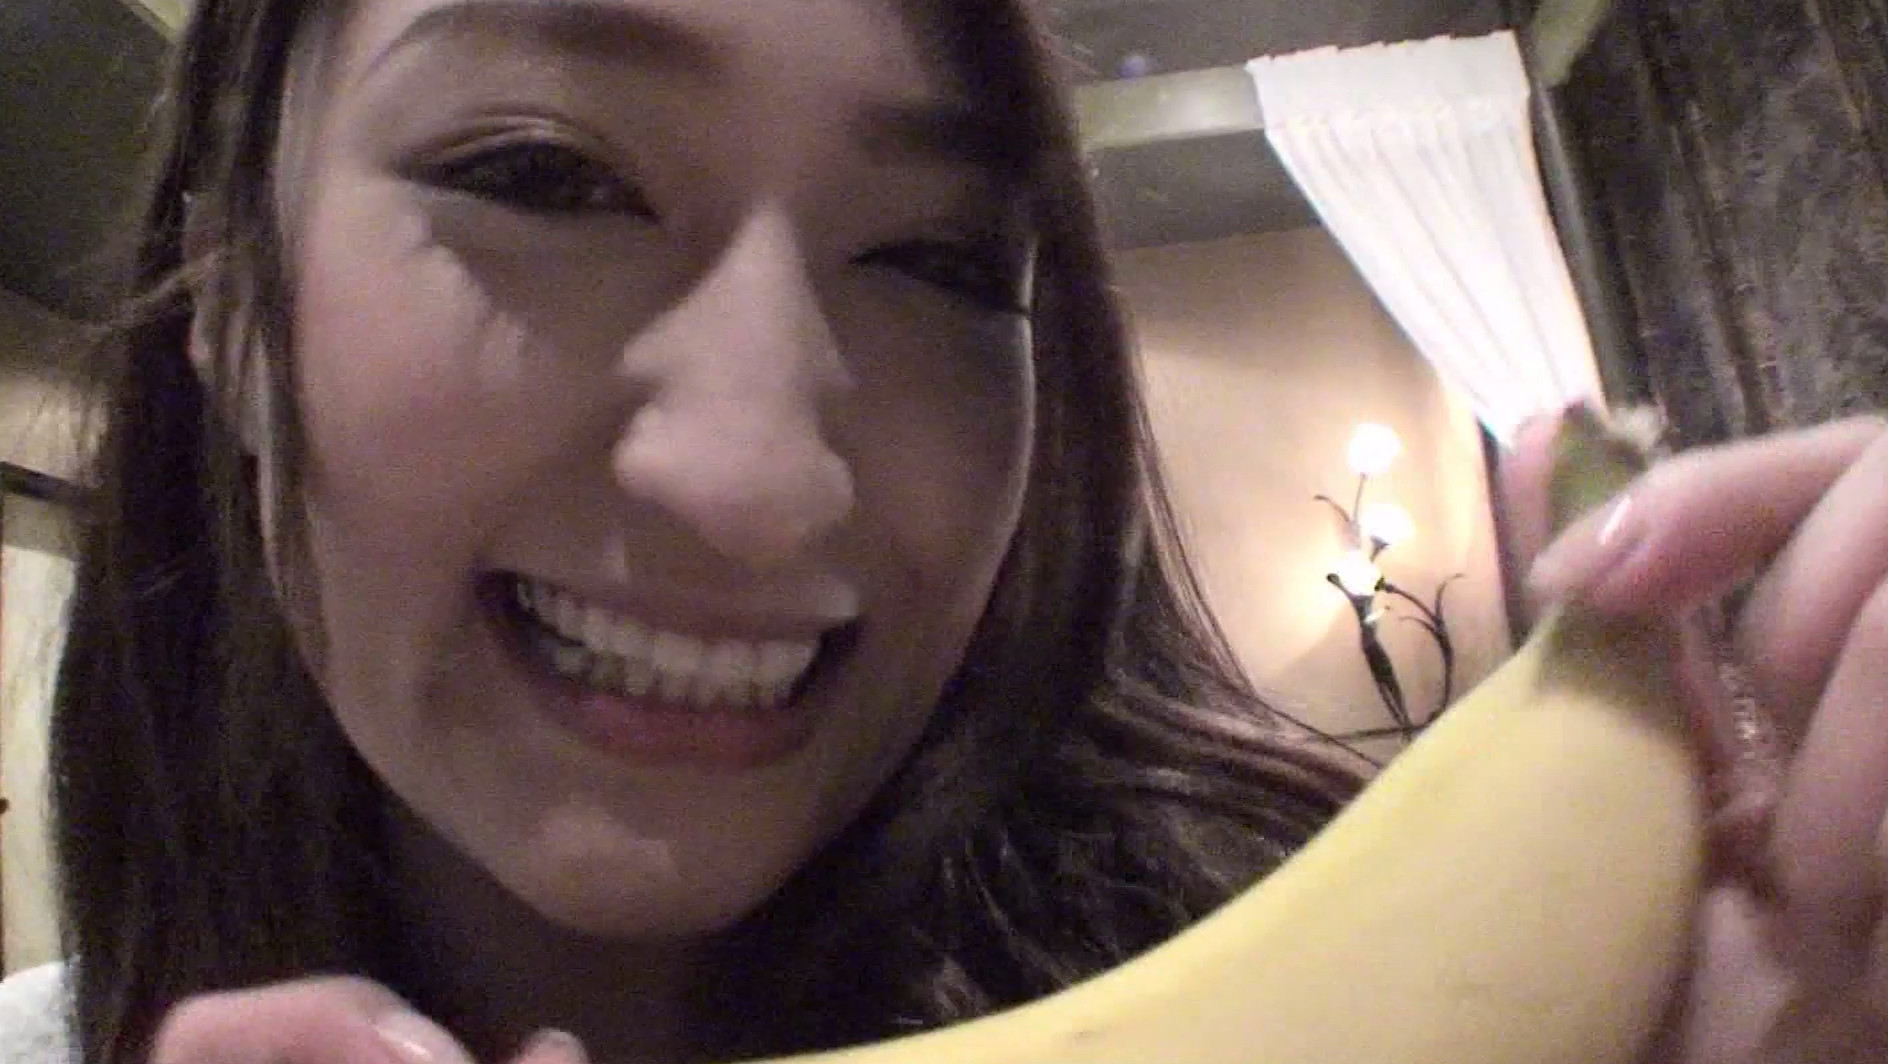 【アダルト動画】目鼻立ちの整ったハーフ系美女がバナナを頬張っているんだが普通のフェラより格段にエロくて笑う